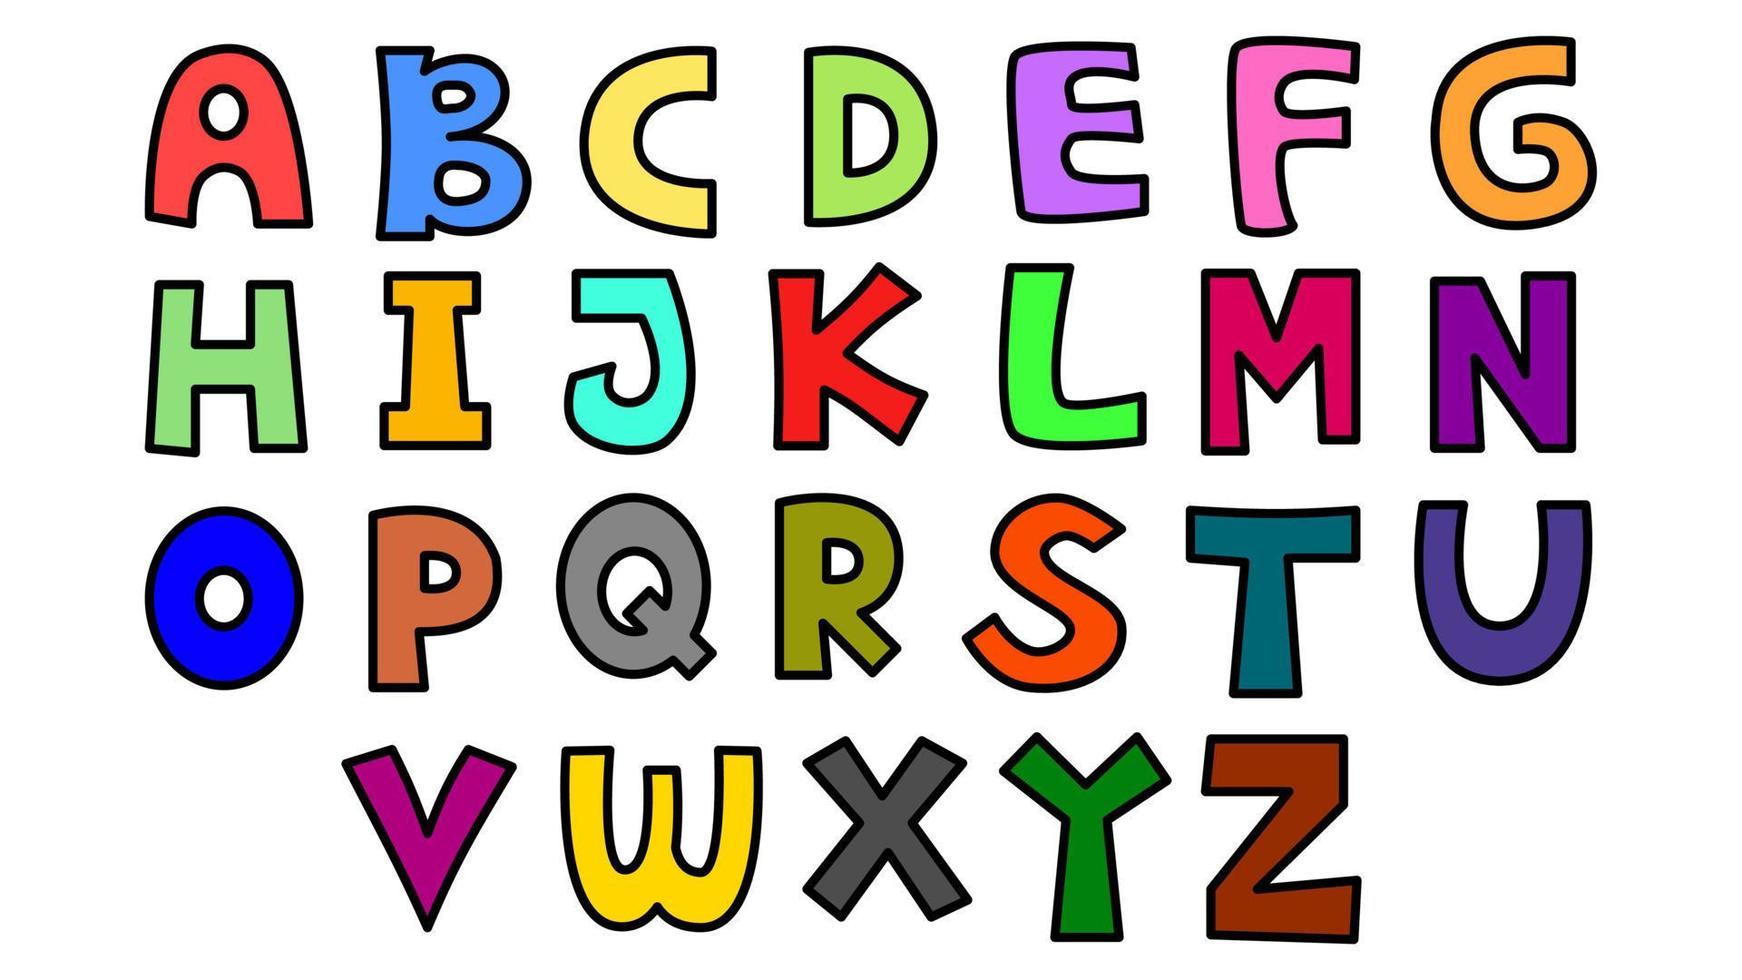 kleurrijk hoofdletters alfabet Aan wit achtergrond illustratie voor sjabloon, ontwerp, behang, afdrukken vector